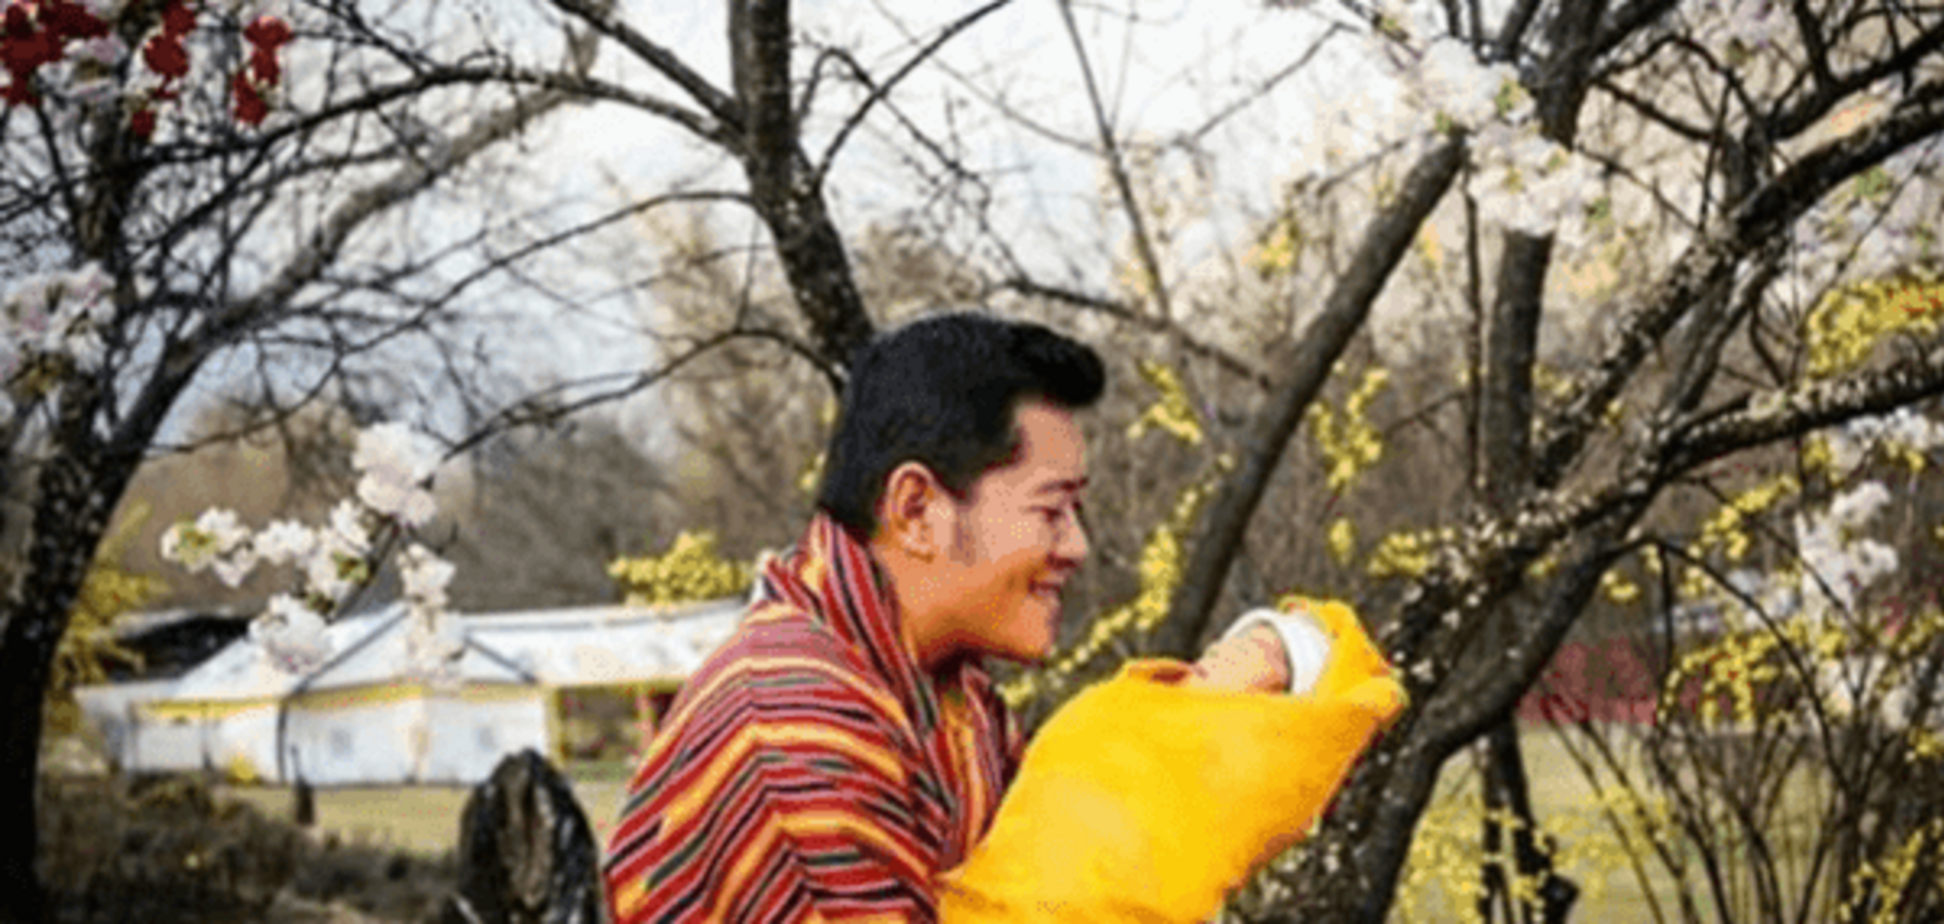 Королевские дети: фото маленького принца Бутана покорило соцсети